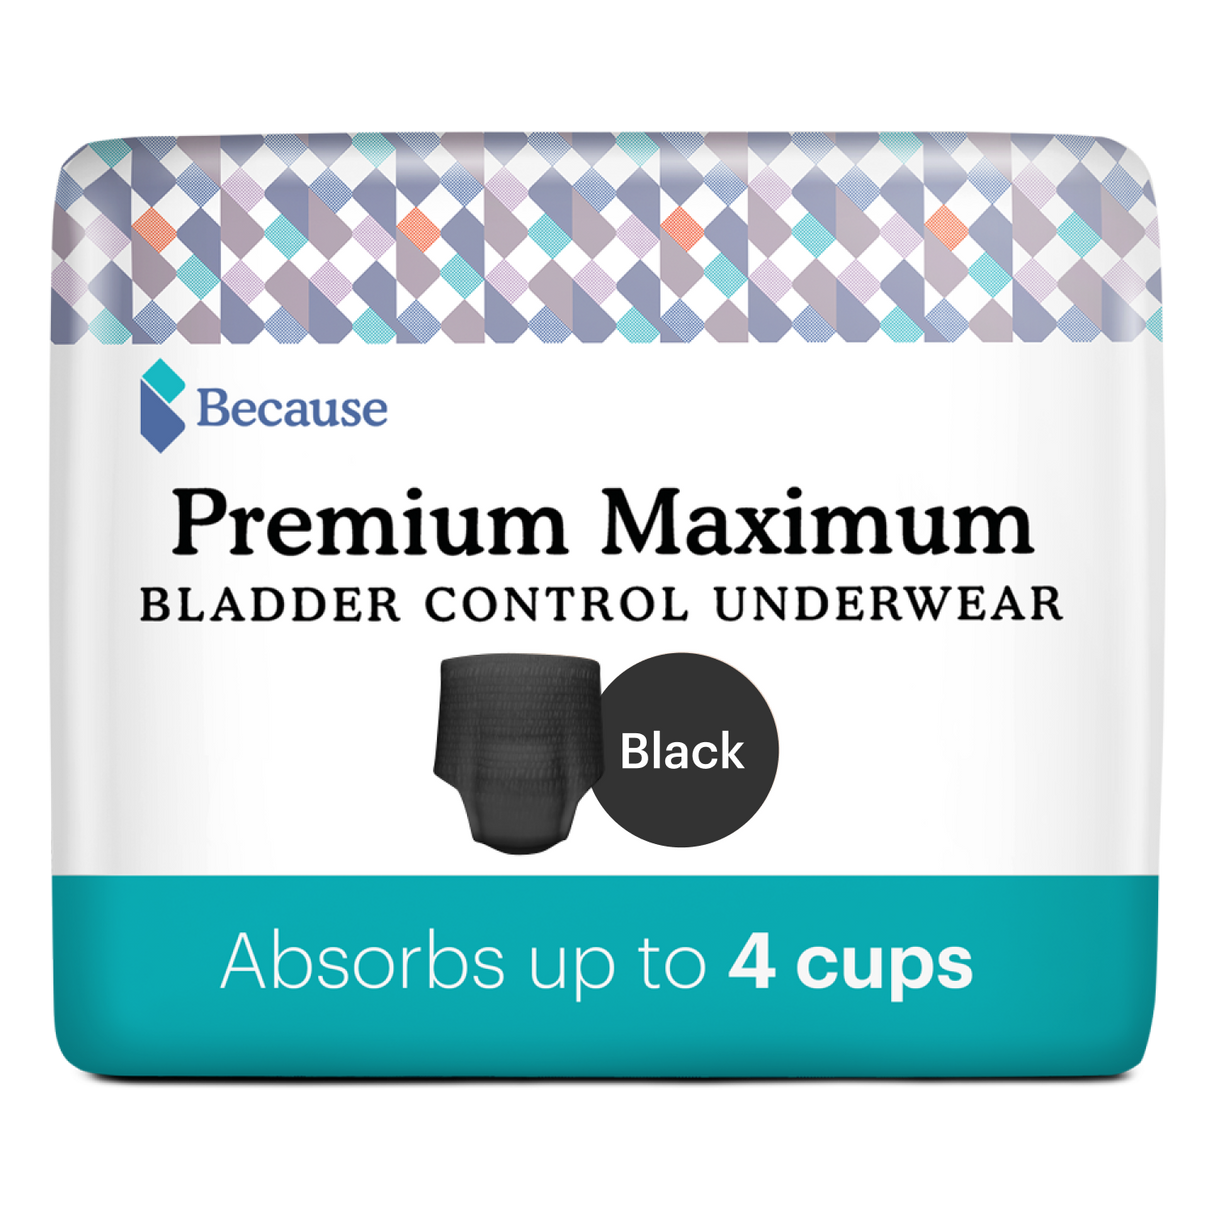 Starter Kit of Premium Maximum Underwear - Black